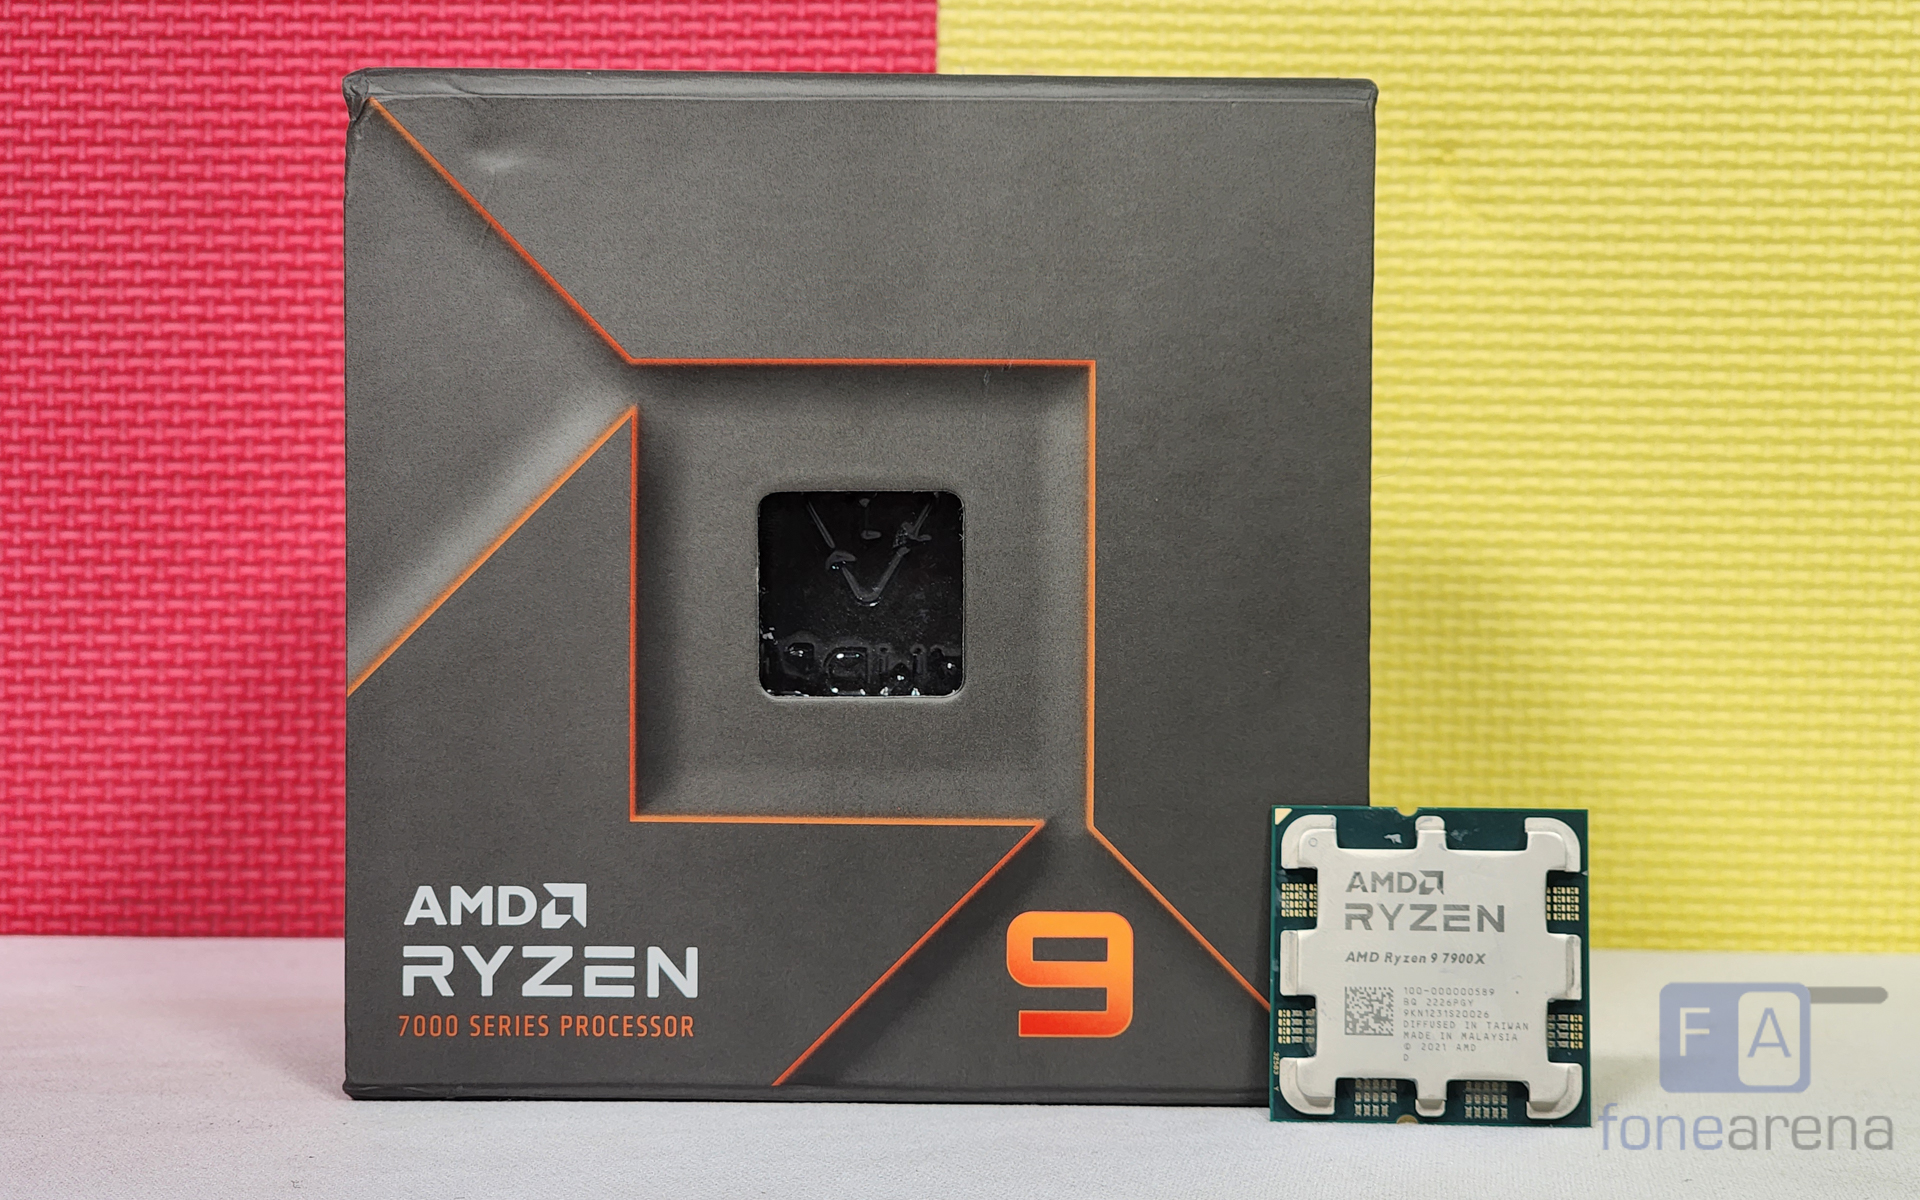 AMD Ryzen 9 7900X Twelve-Core Processor/CPU, without Cooler. - 100